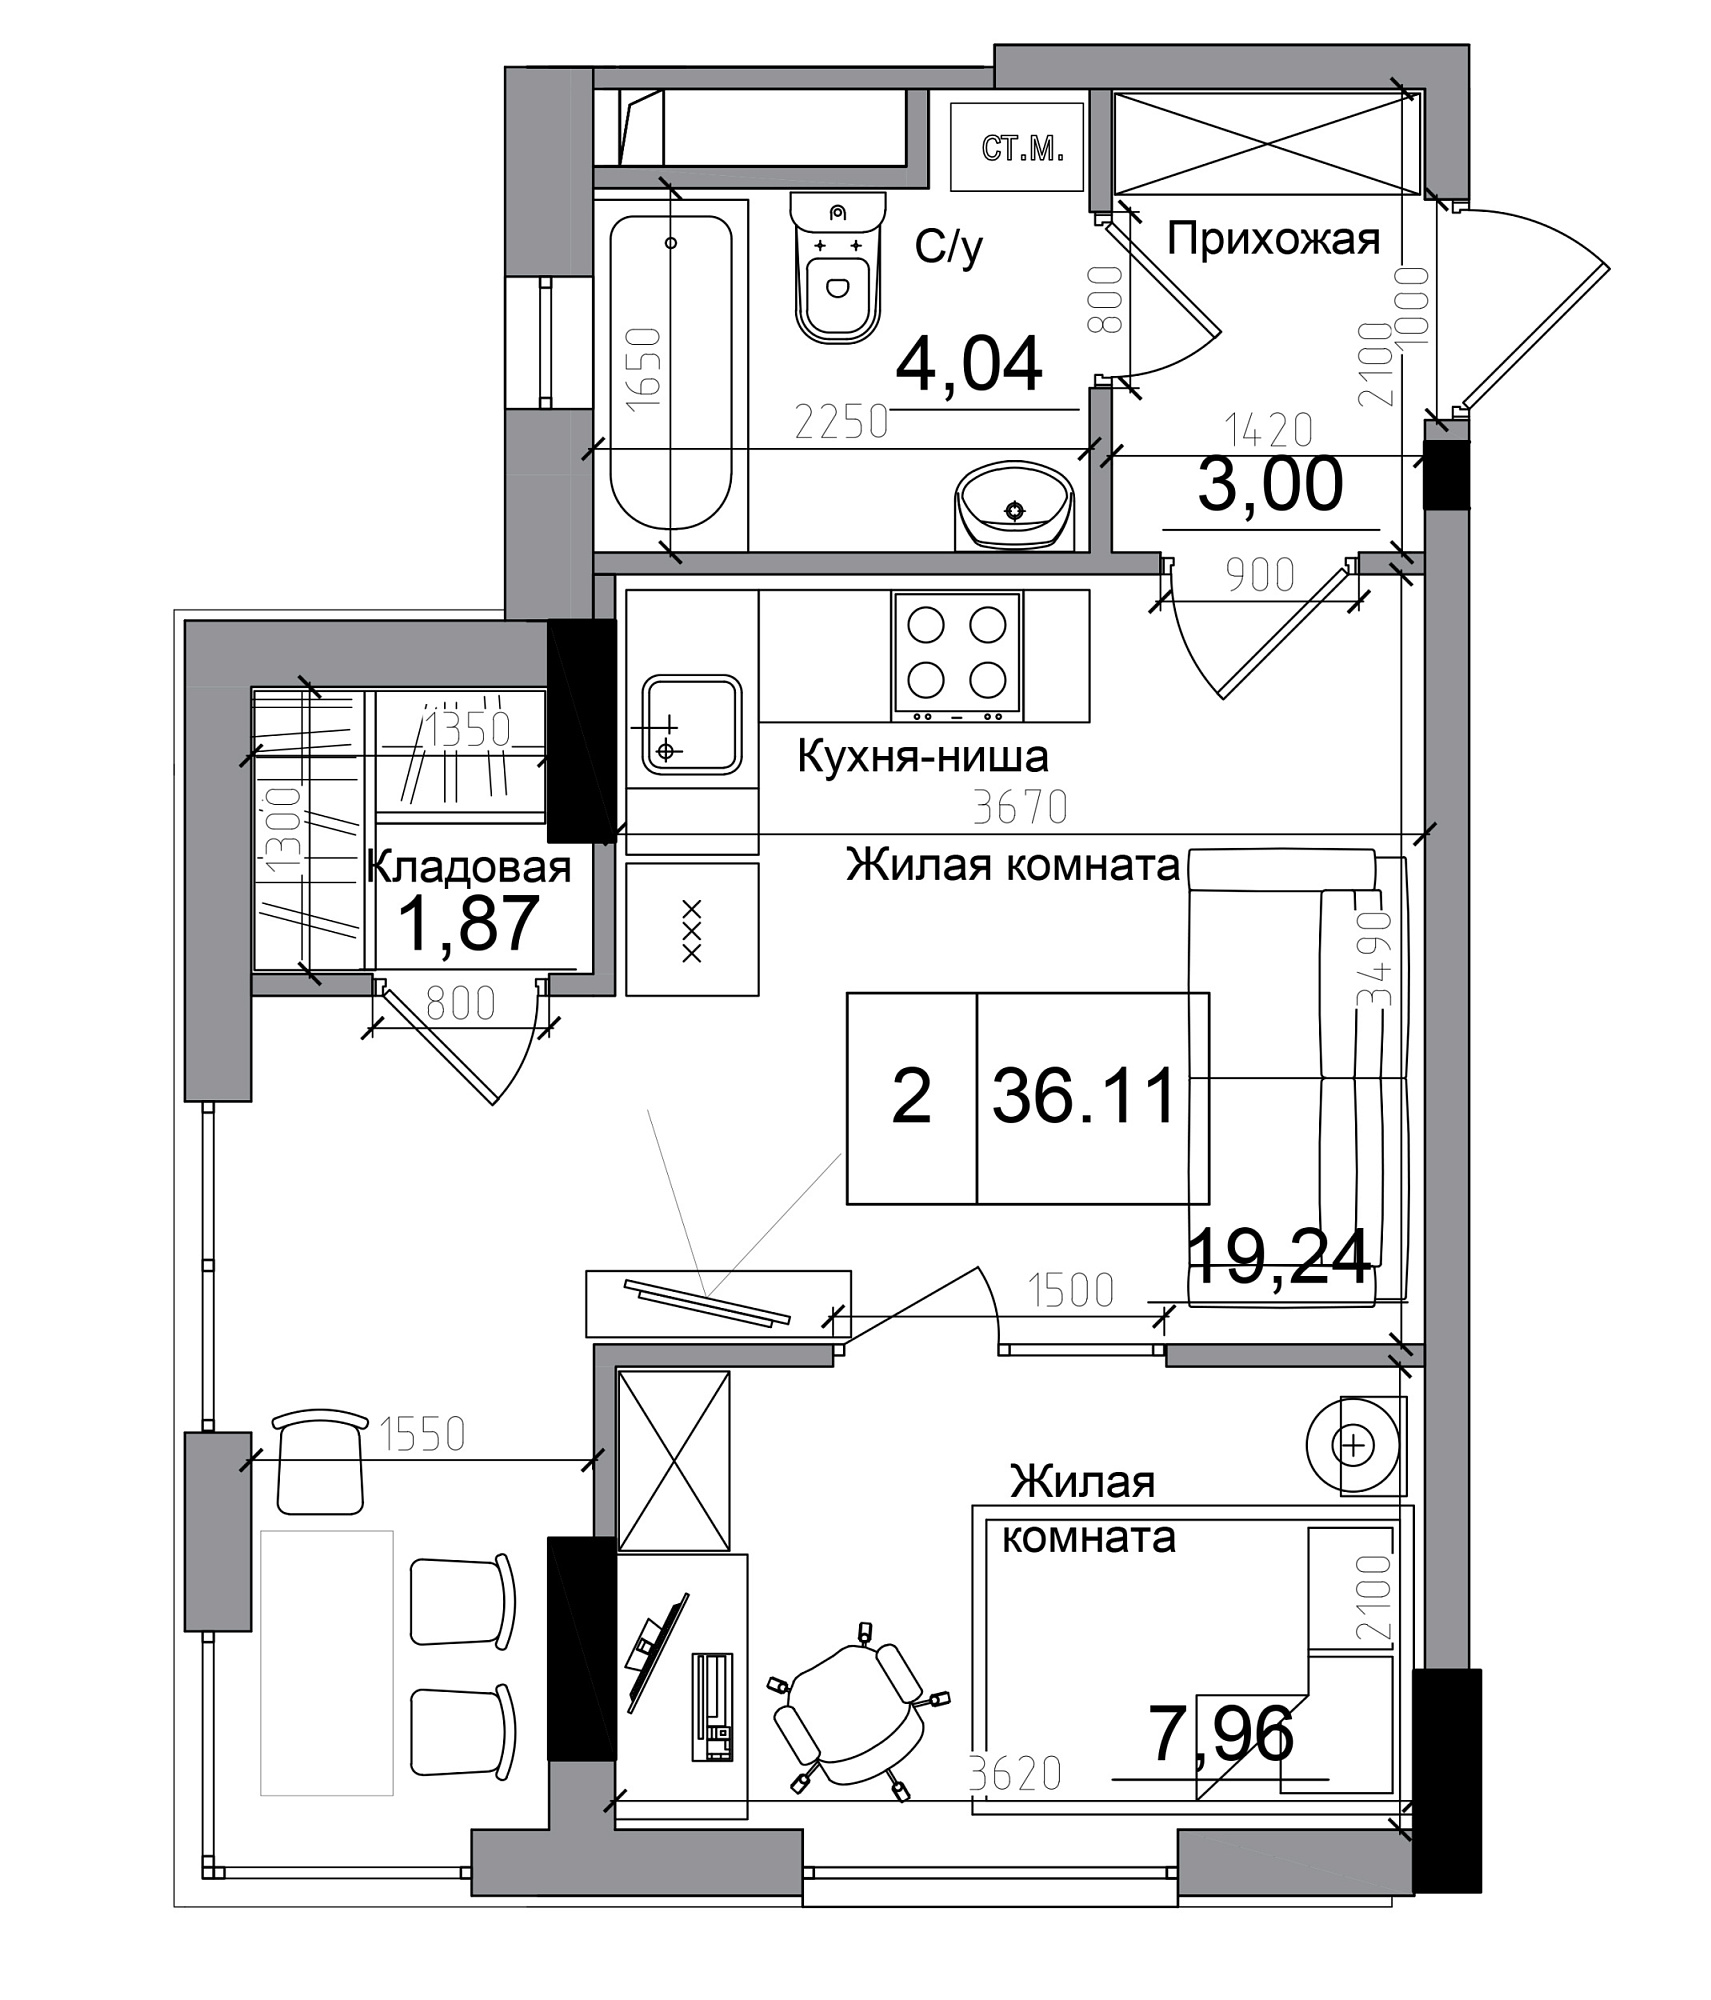 Планування 1-к квартира площею 36.11м2, AB-11-11/00004.